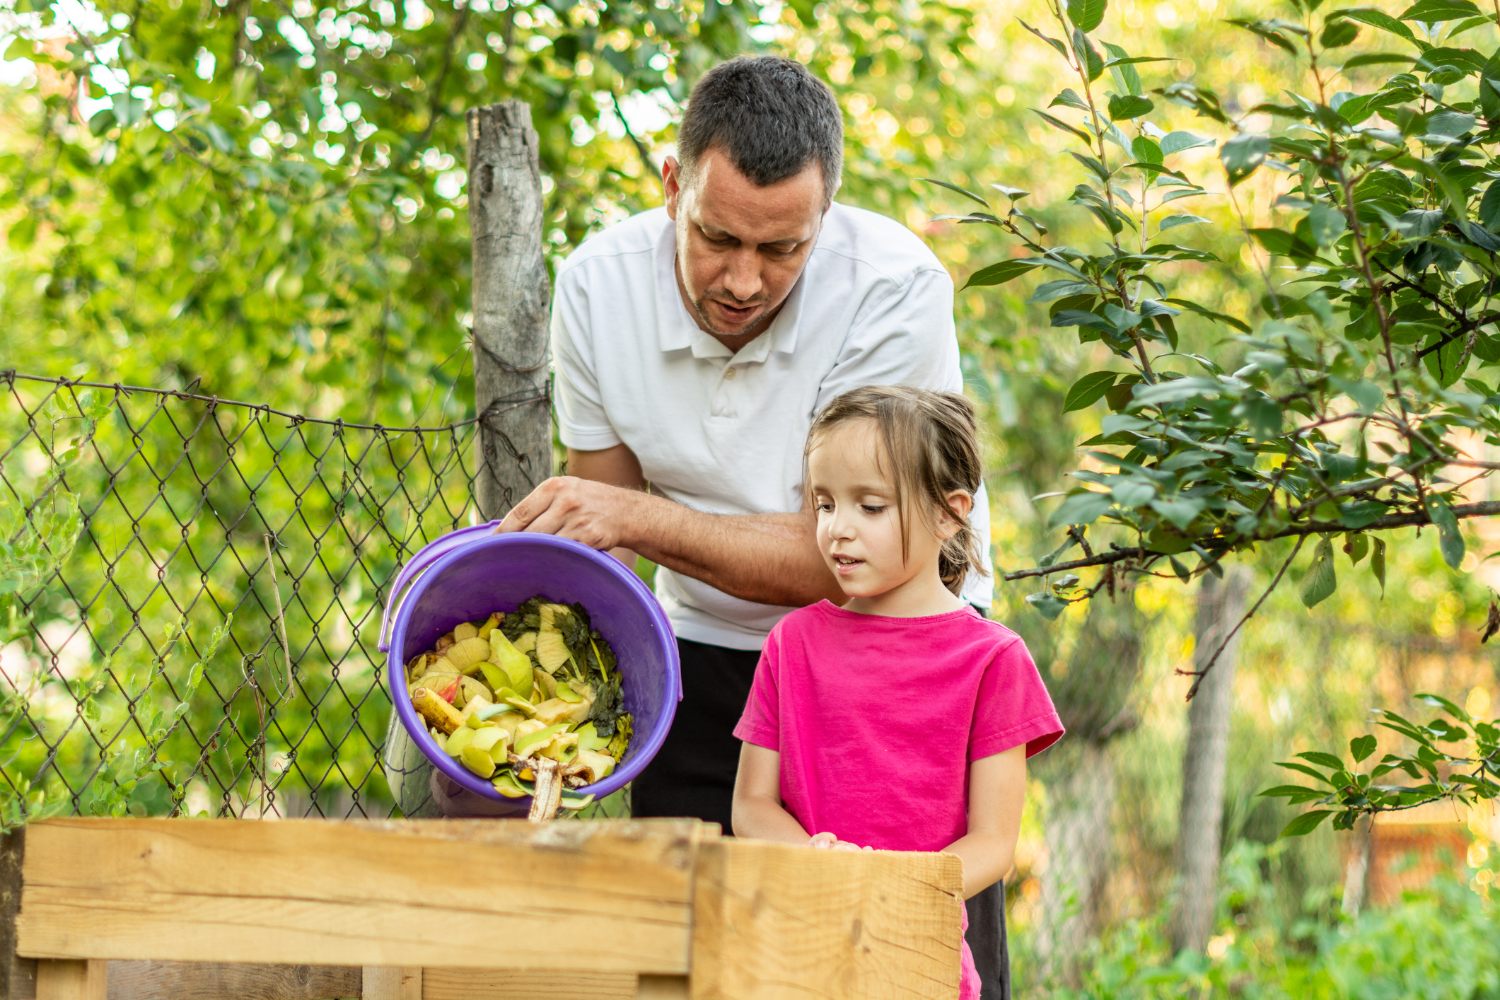 El compost es un método que puede aplicar para toda la familia. - Foto StockPlanets/Gettyimages